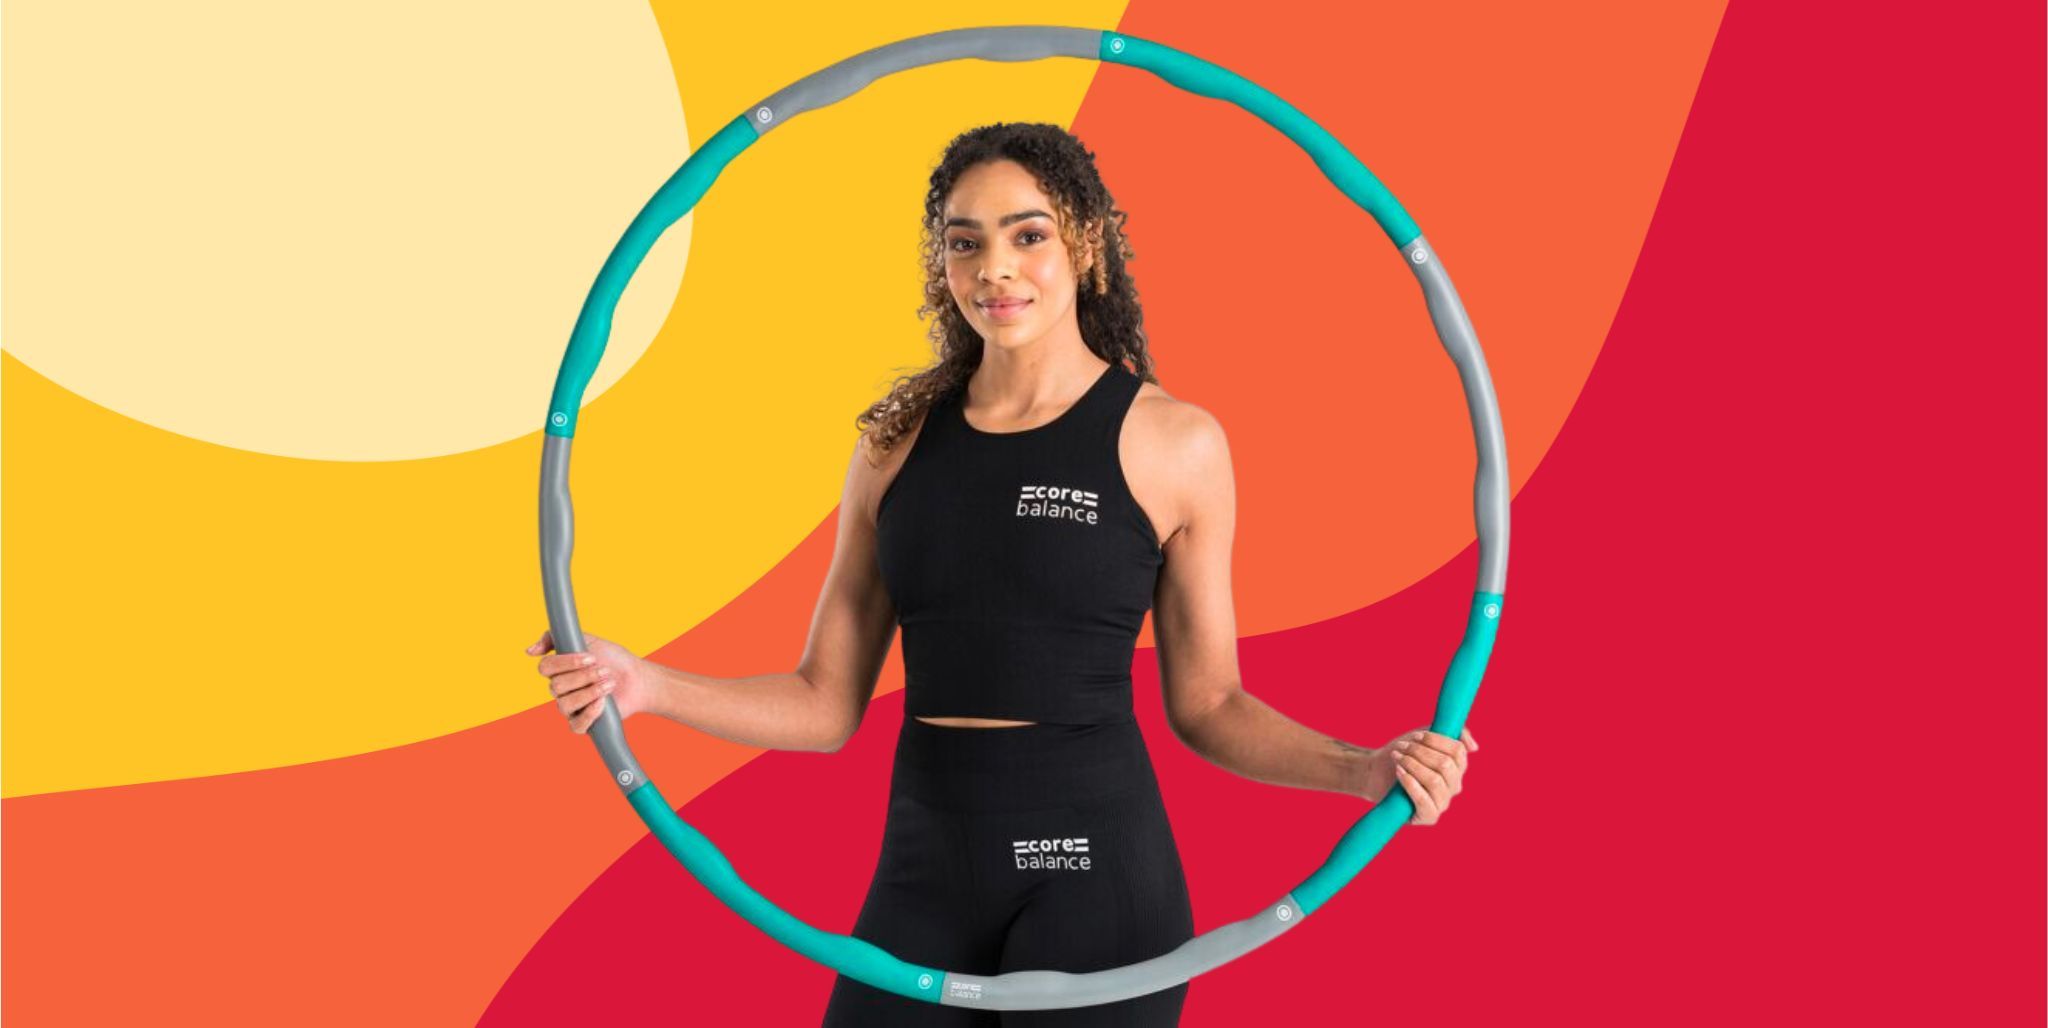 Peut-on vraiment perdre du poids efficacement avec un hula hoop ?